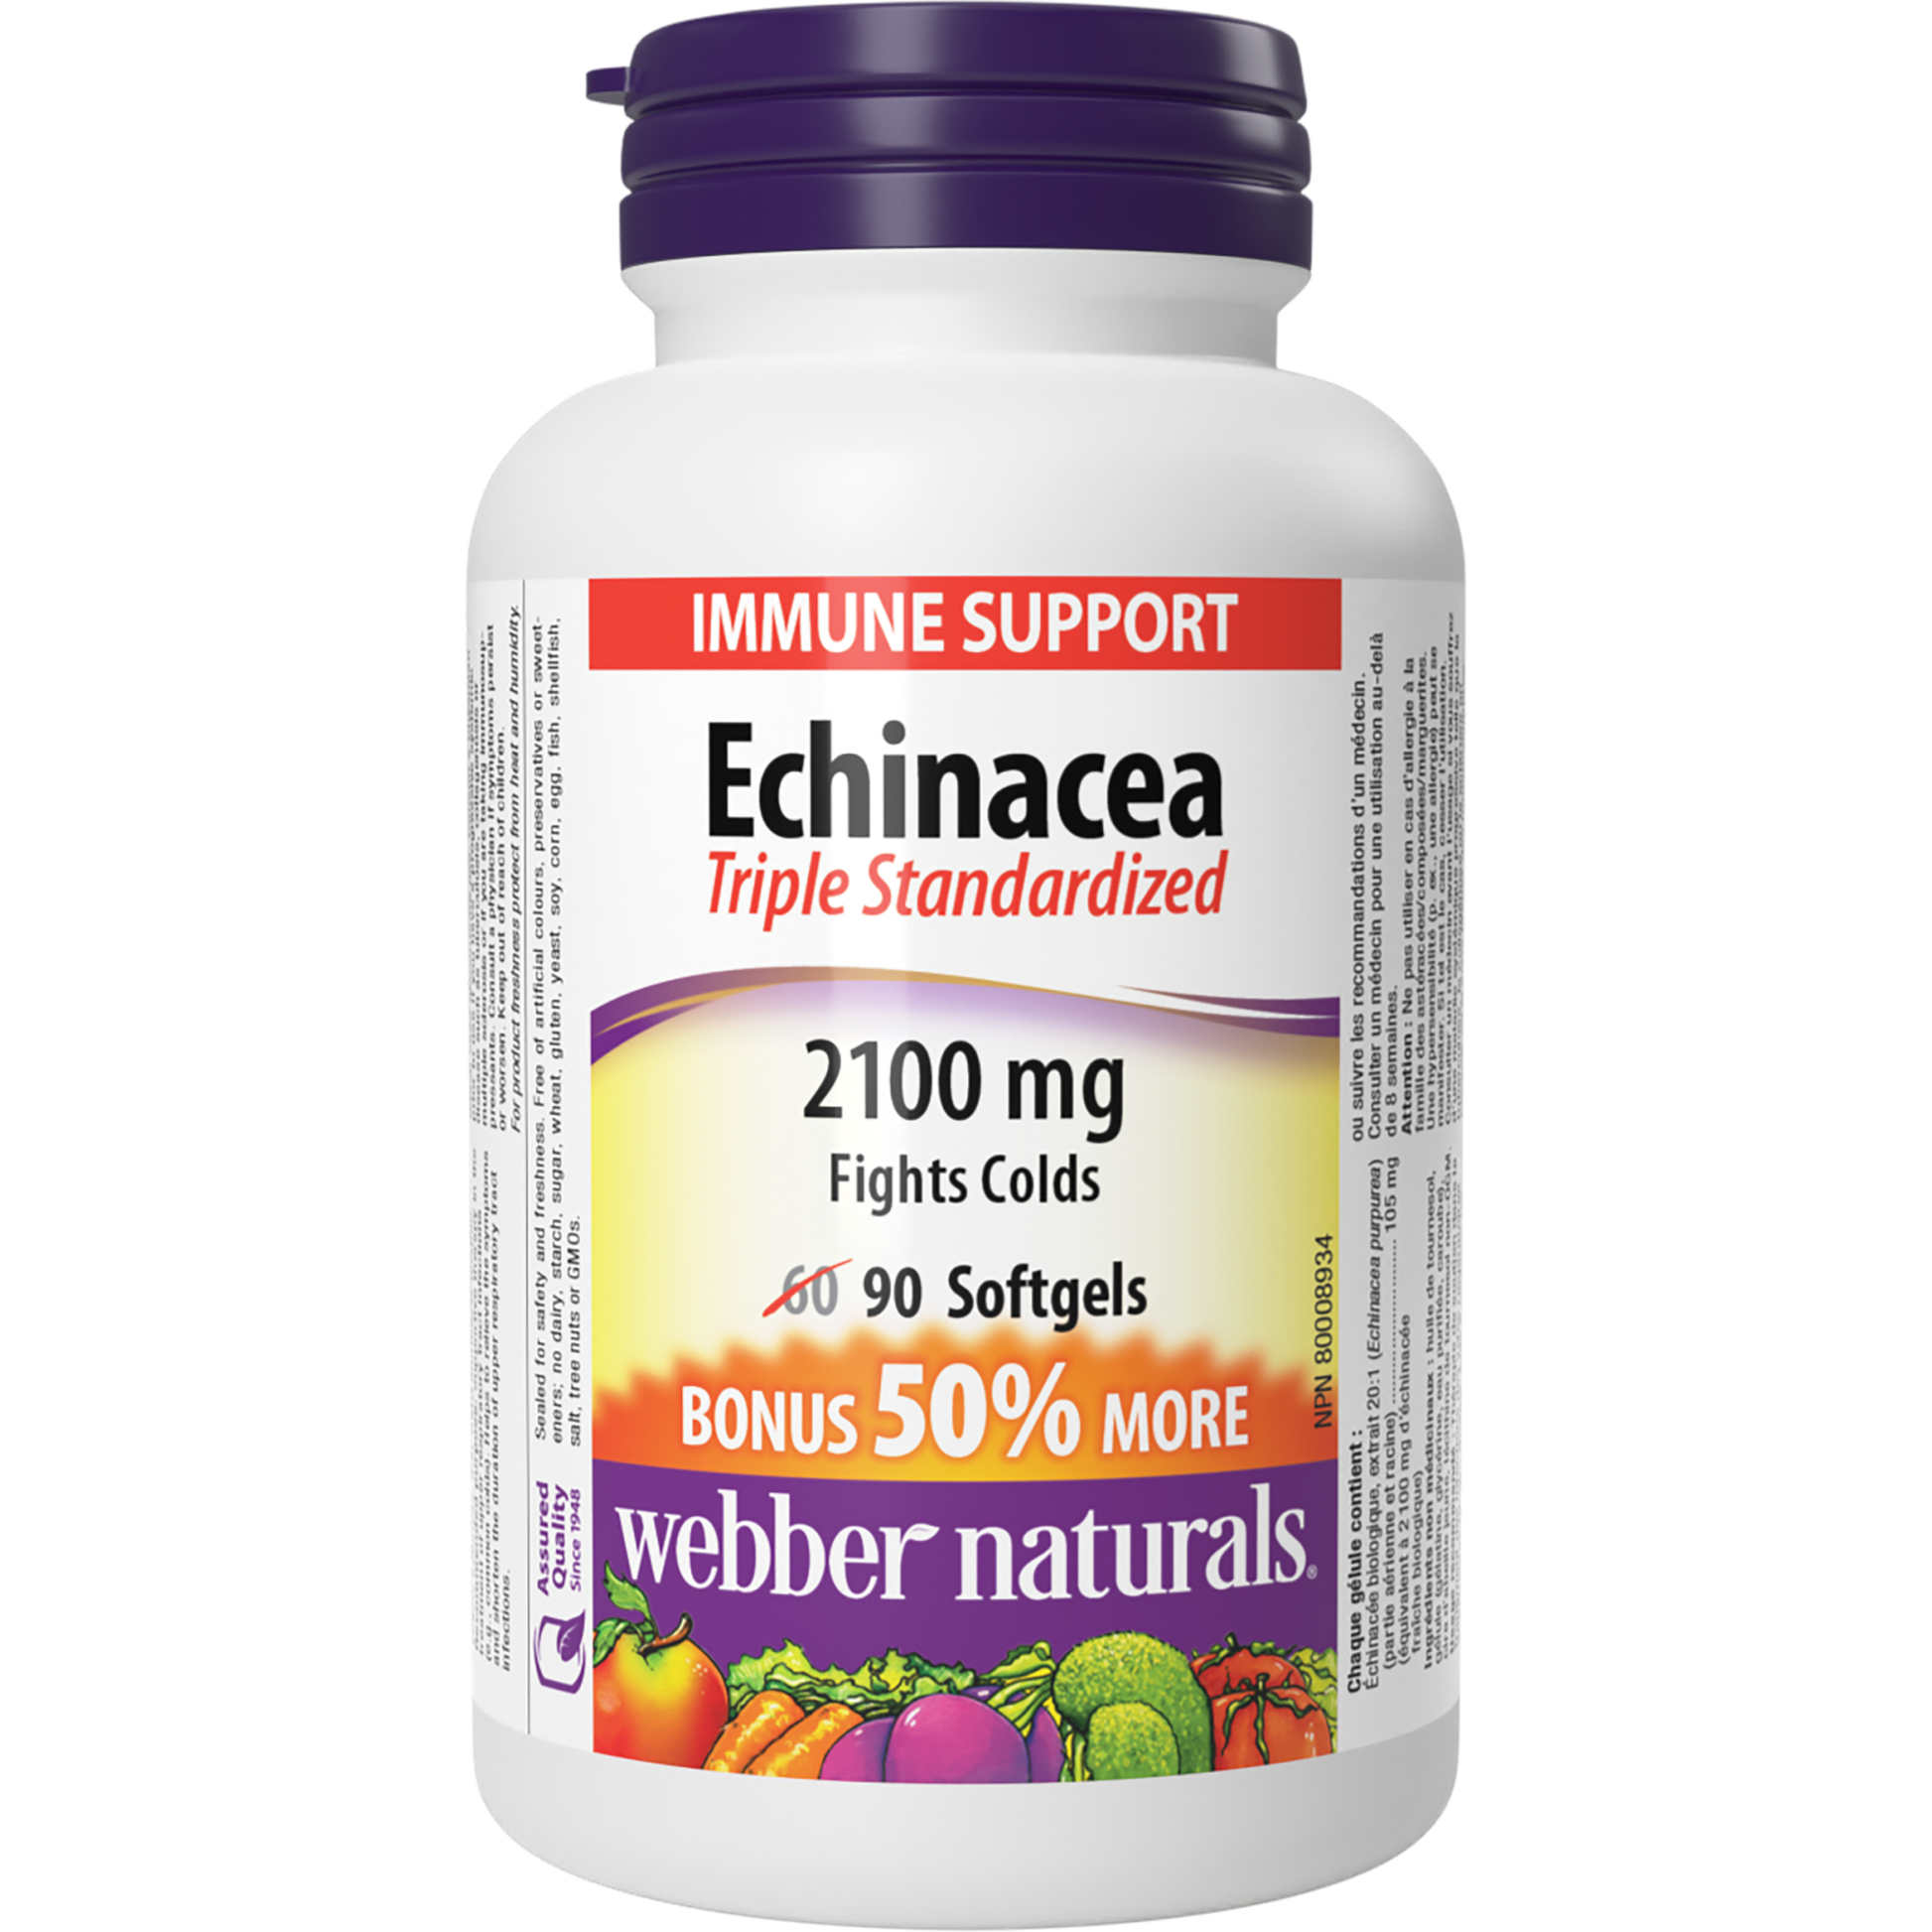 Echinacea Triple Standardized 2100 mg for Webber Naturals|v|hi-res|WN5088